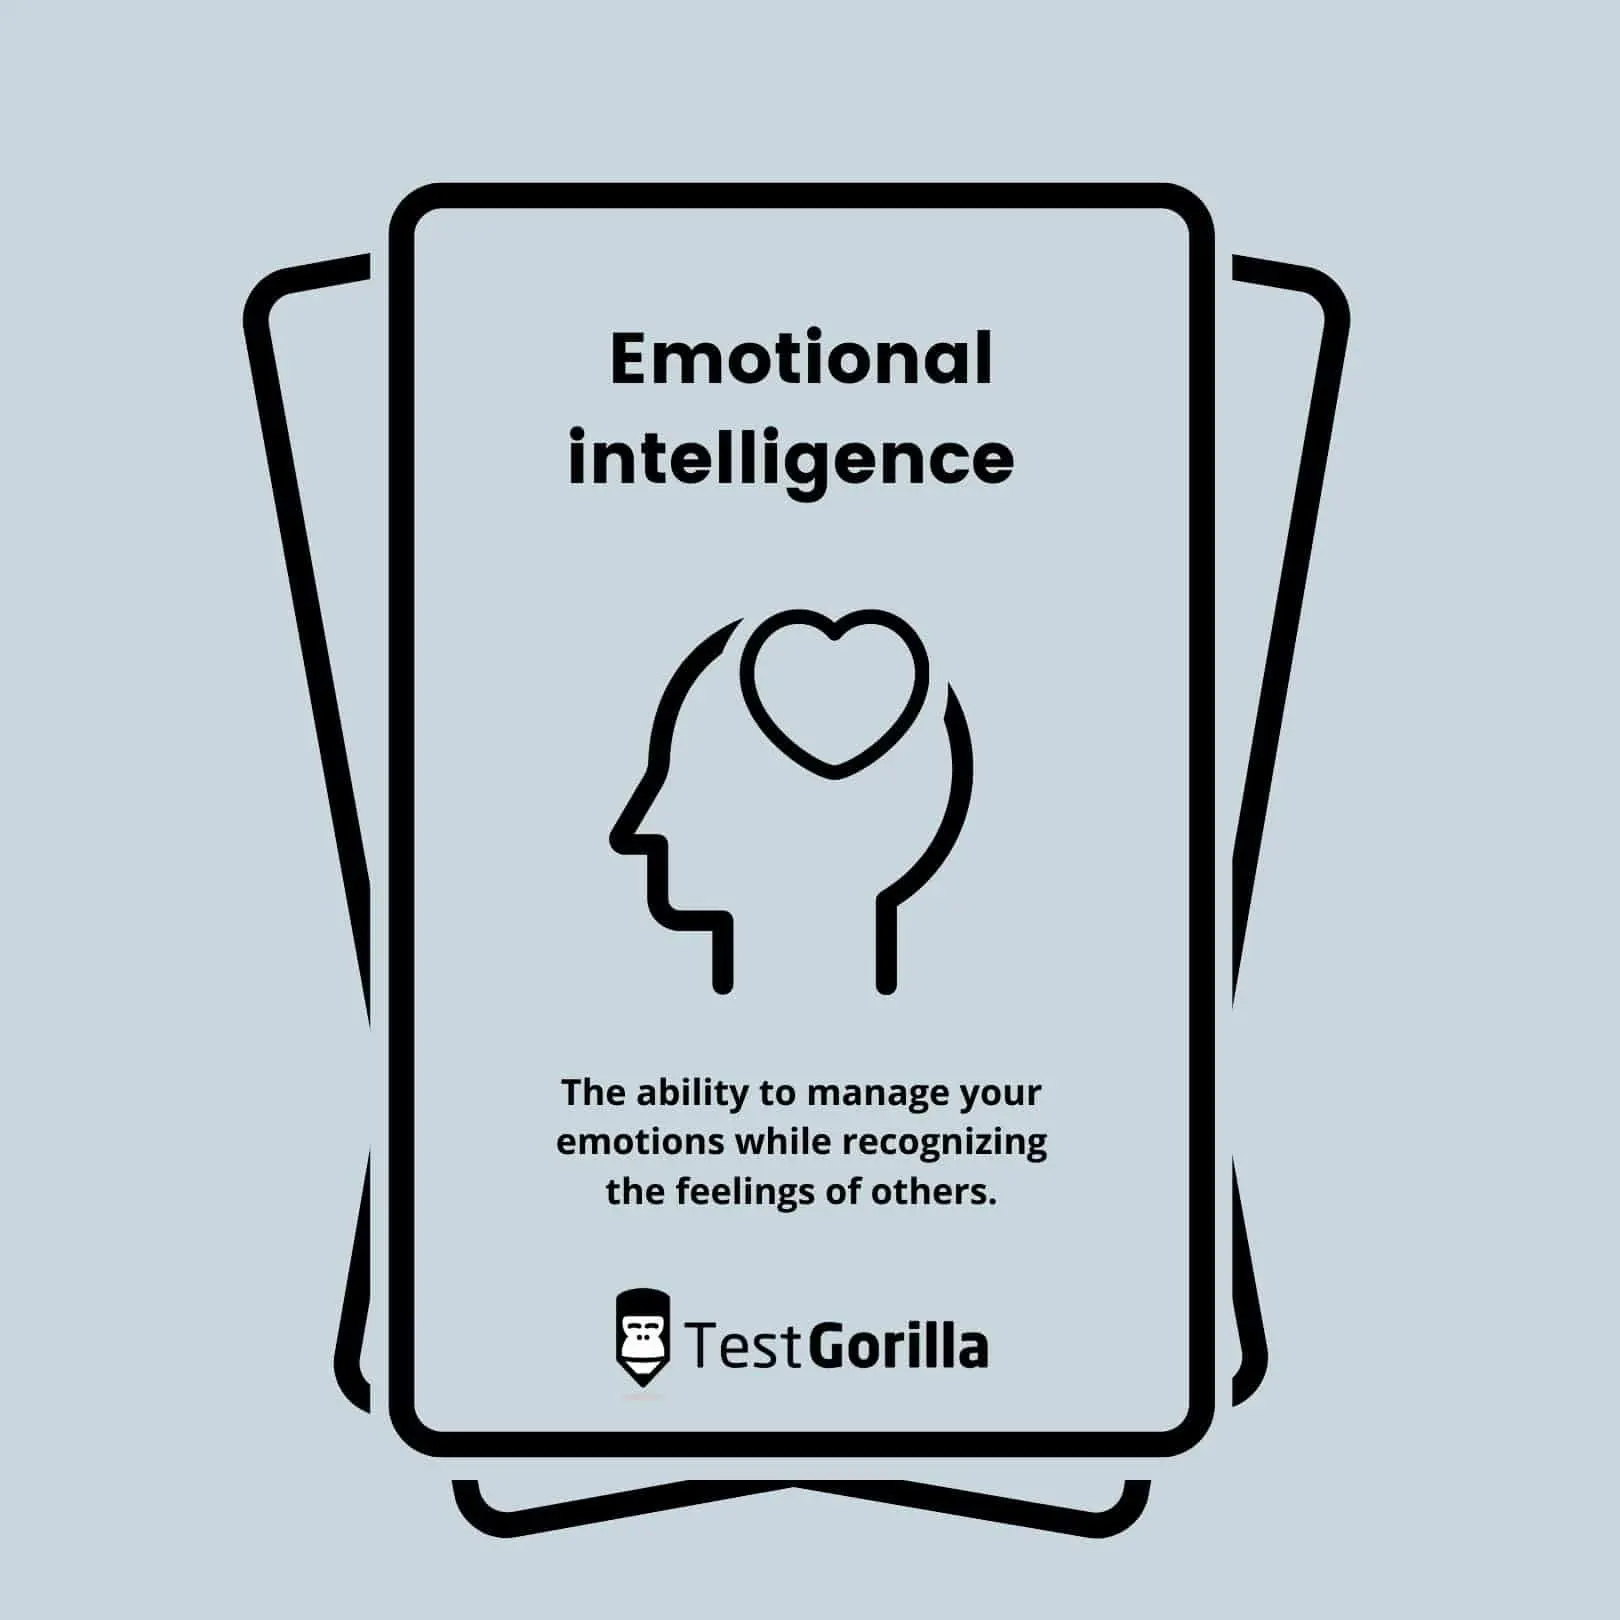 emotional intelligence definition